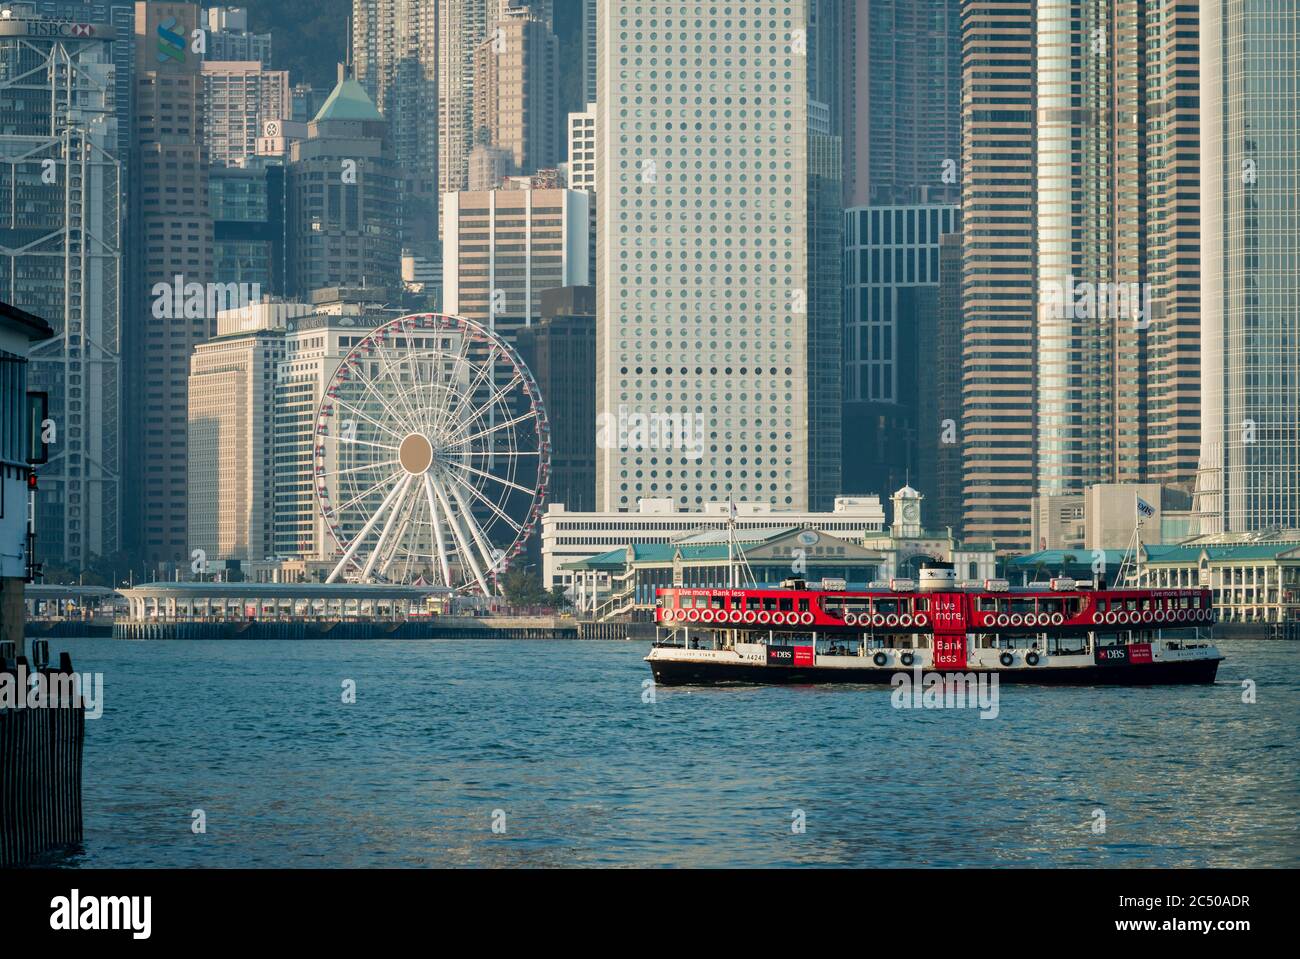 Un barco Star Ferry en el puerto de Hong Kong cruzando el paseo marítimo del Distrito Central con sus muchos rascacielos. Foto de stock